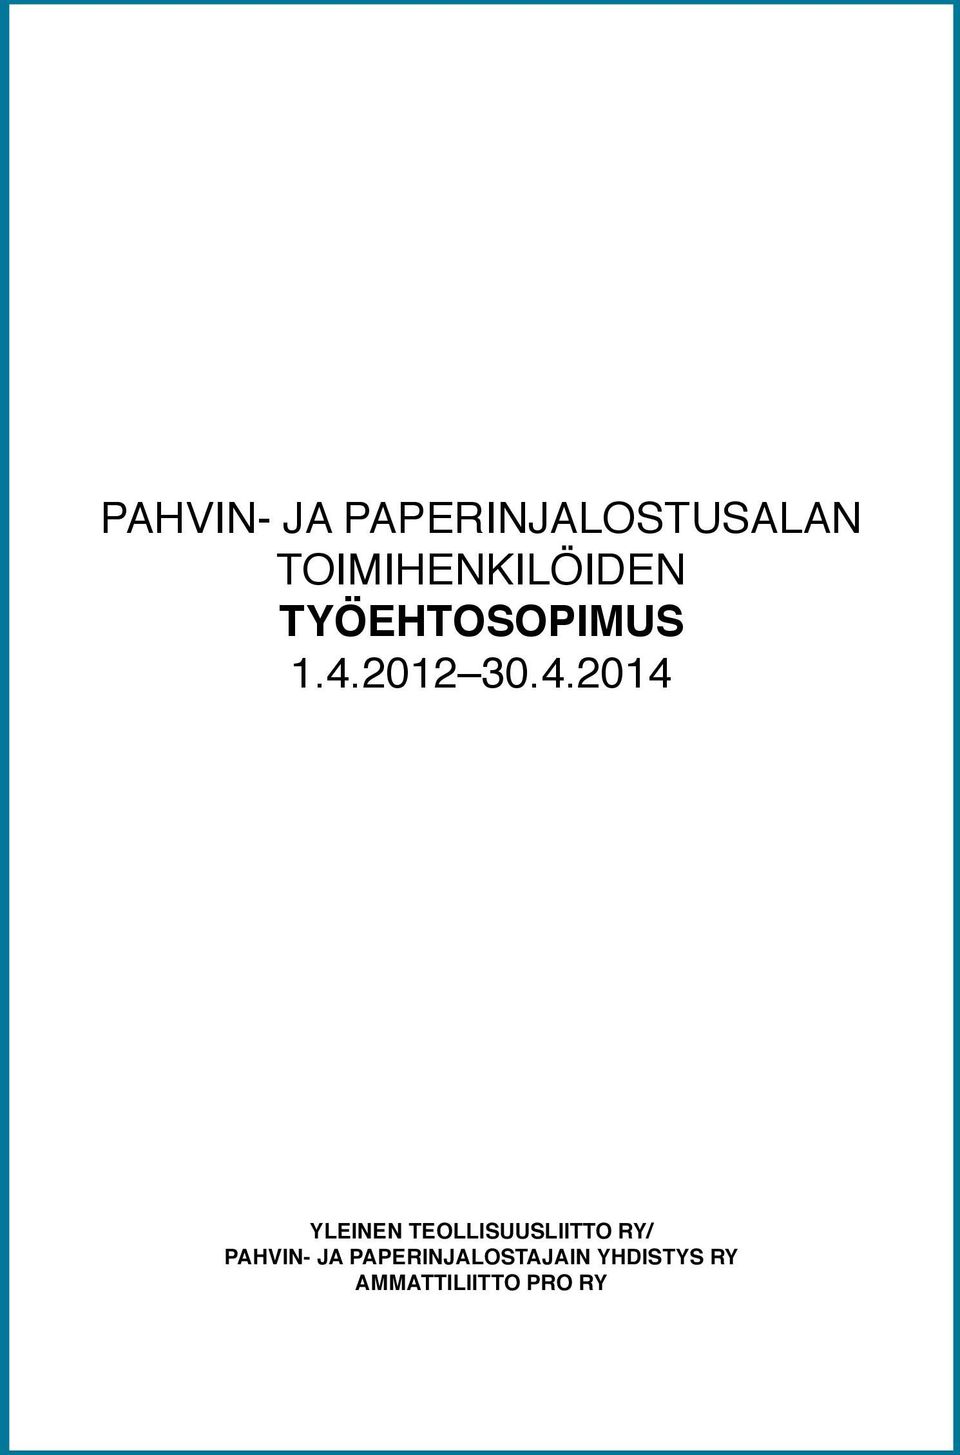 4.2014 YLEINEN TEOLLISUUSLIITTO RY/ PAHVIN-